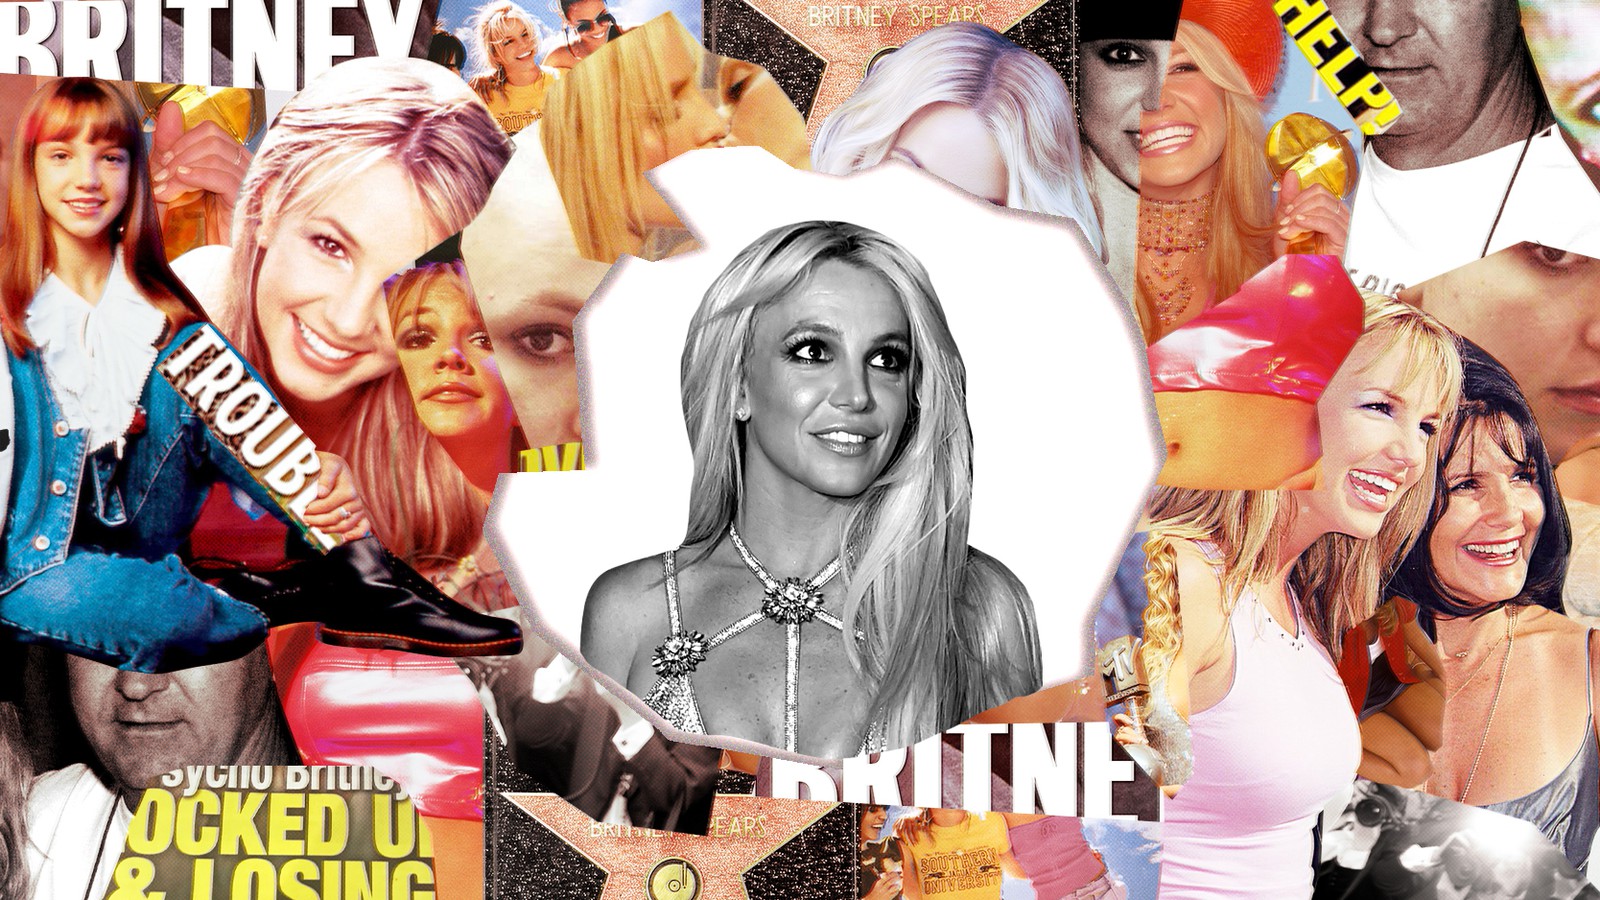 Бритни Спирс постеры 2000. Плакат Бритни Спирс из 90. Плакат с Бритни Спирс 2000. Бритни Спирс и фанаты 2001. Get back britney